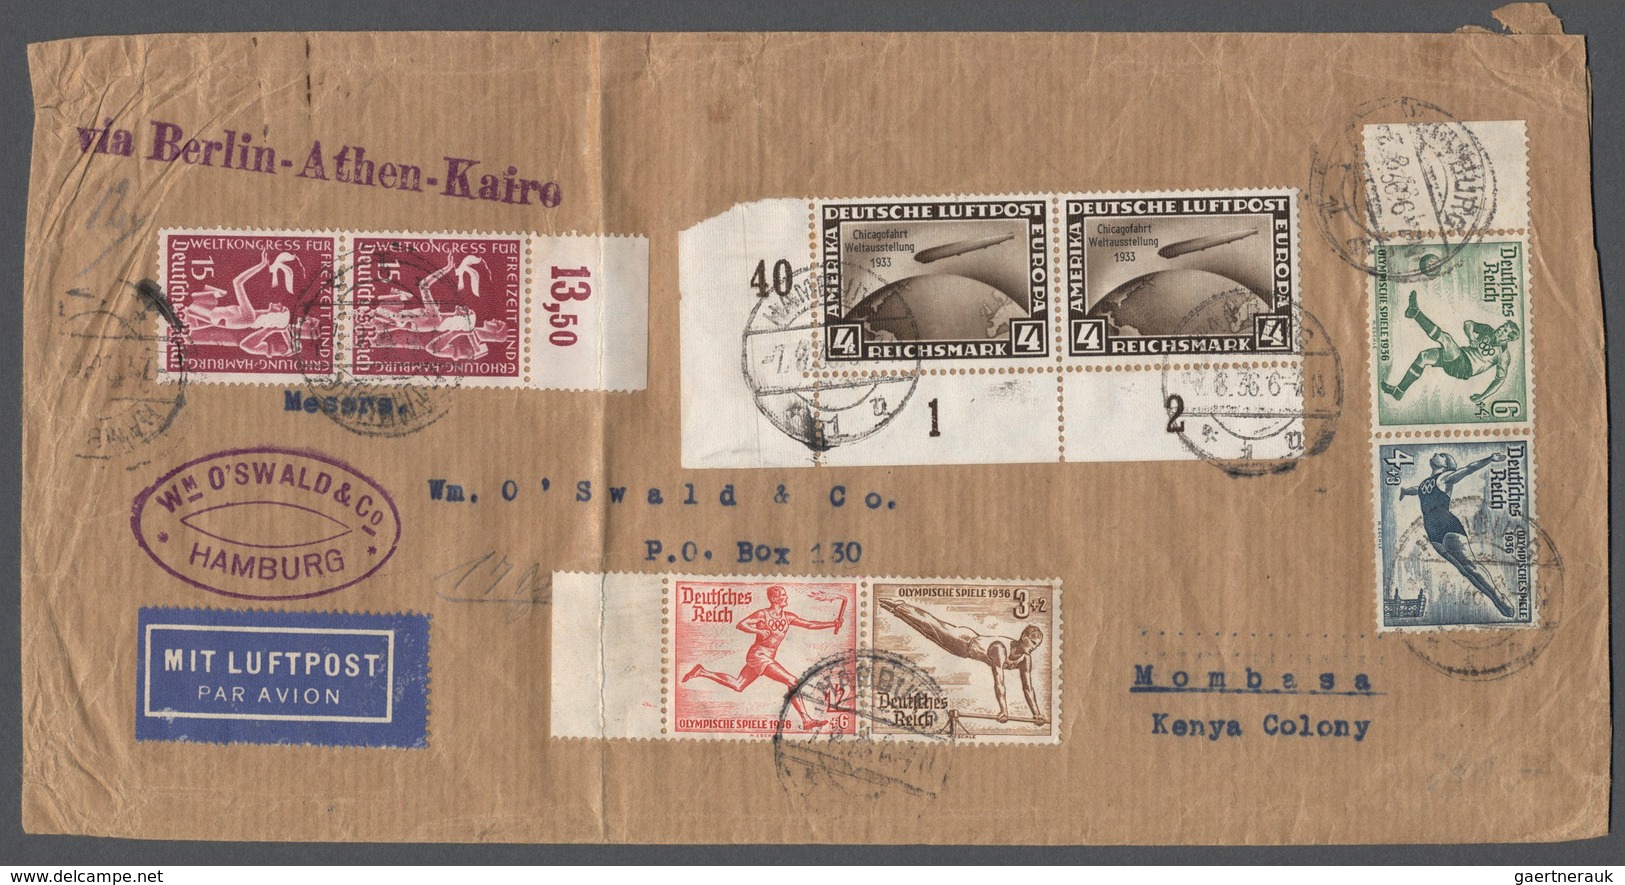 Flugpost Deutschland: 1936, Brief Von Hamburg Nach Mombasa (Kenya Colony) Freigemacht Mit Eckrand-Pa - Correo Aéreo & Zeppelin